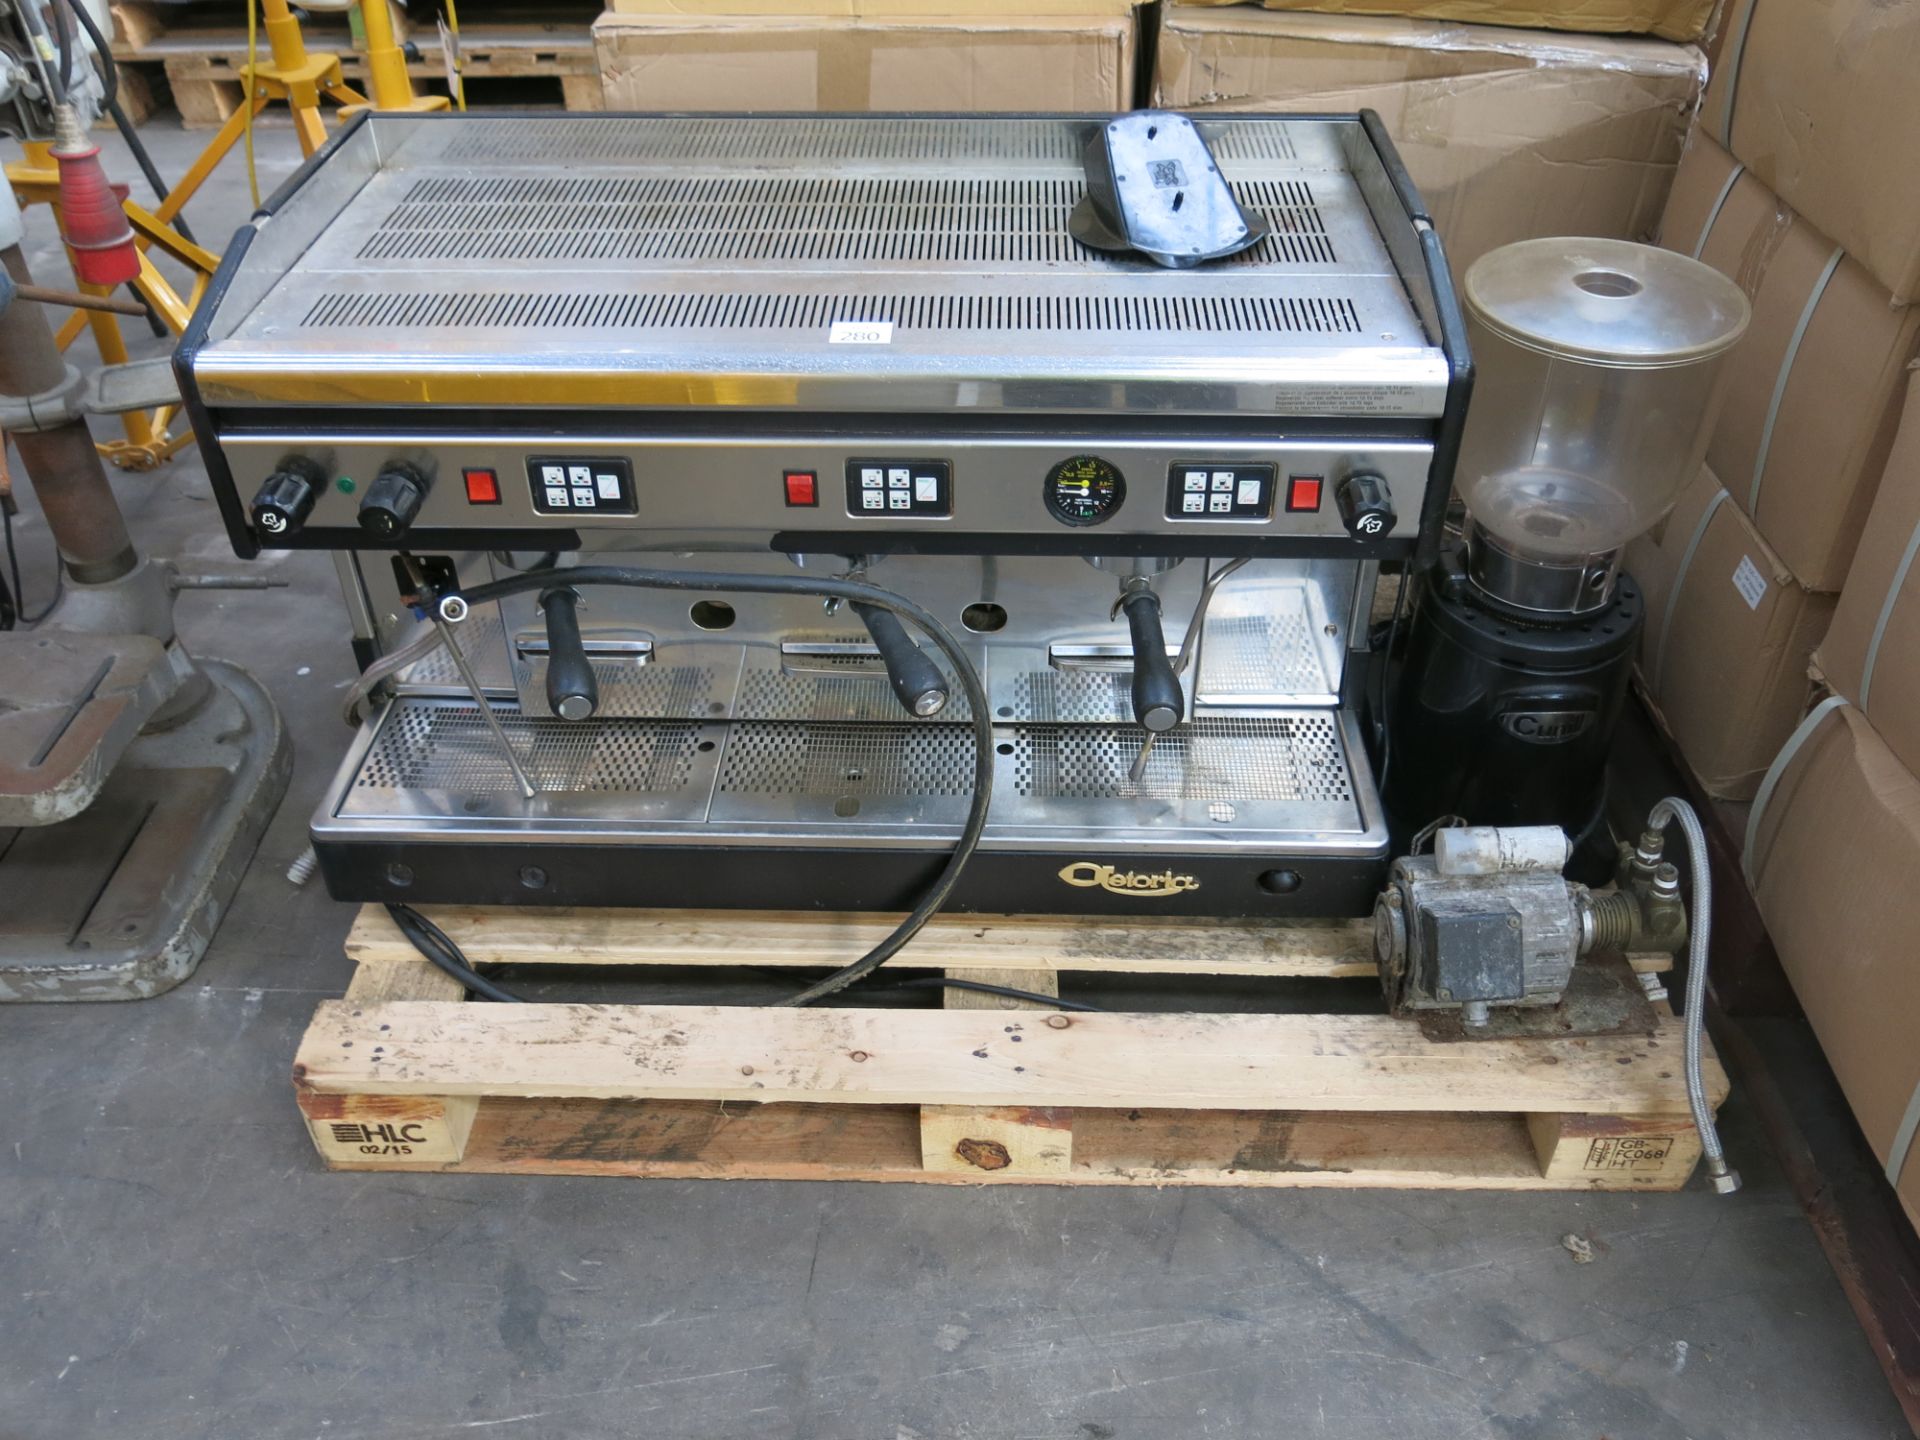 * An Astoria SAE/3-AR 240V Coffee Machine